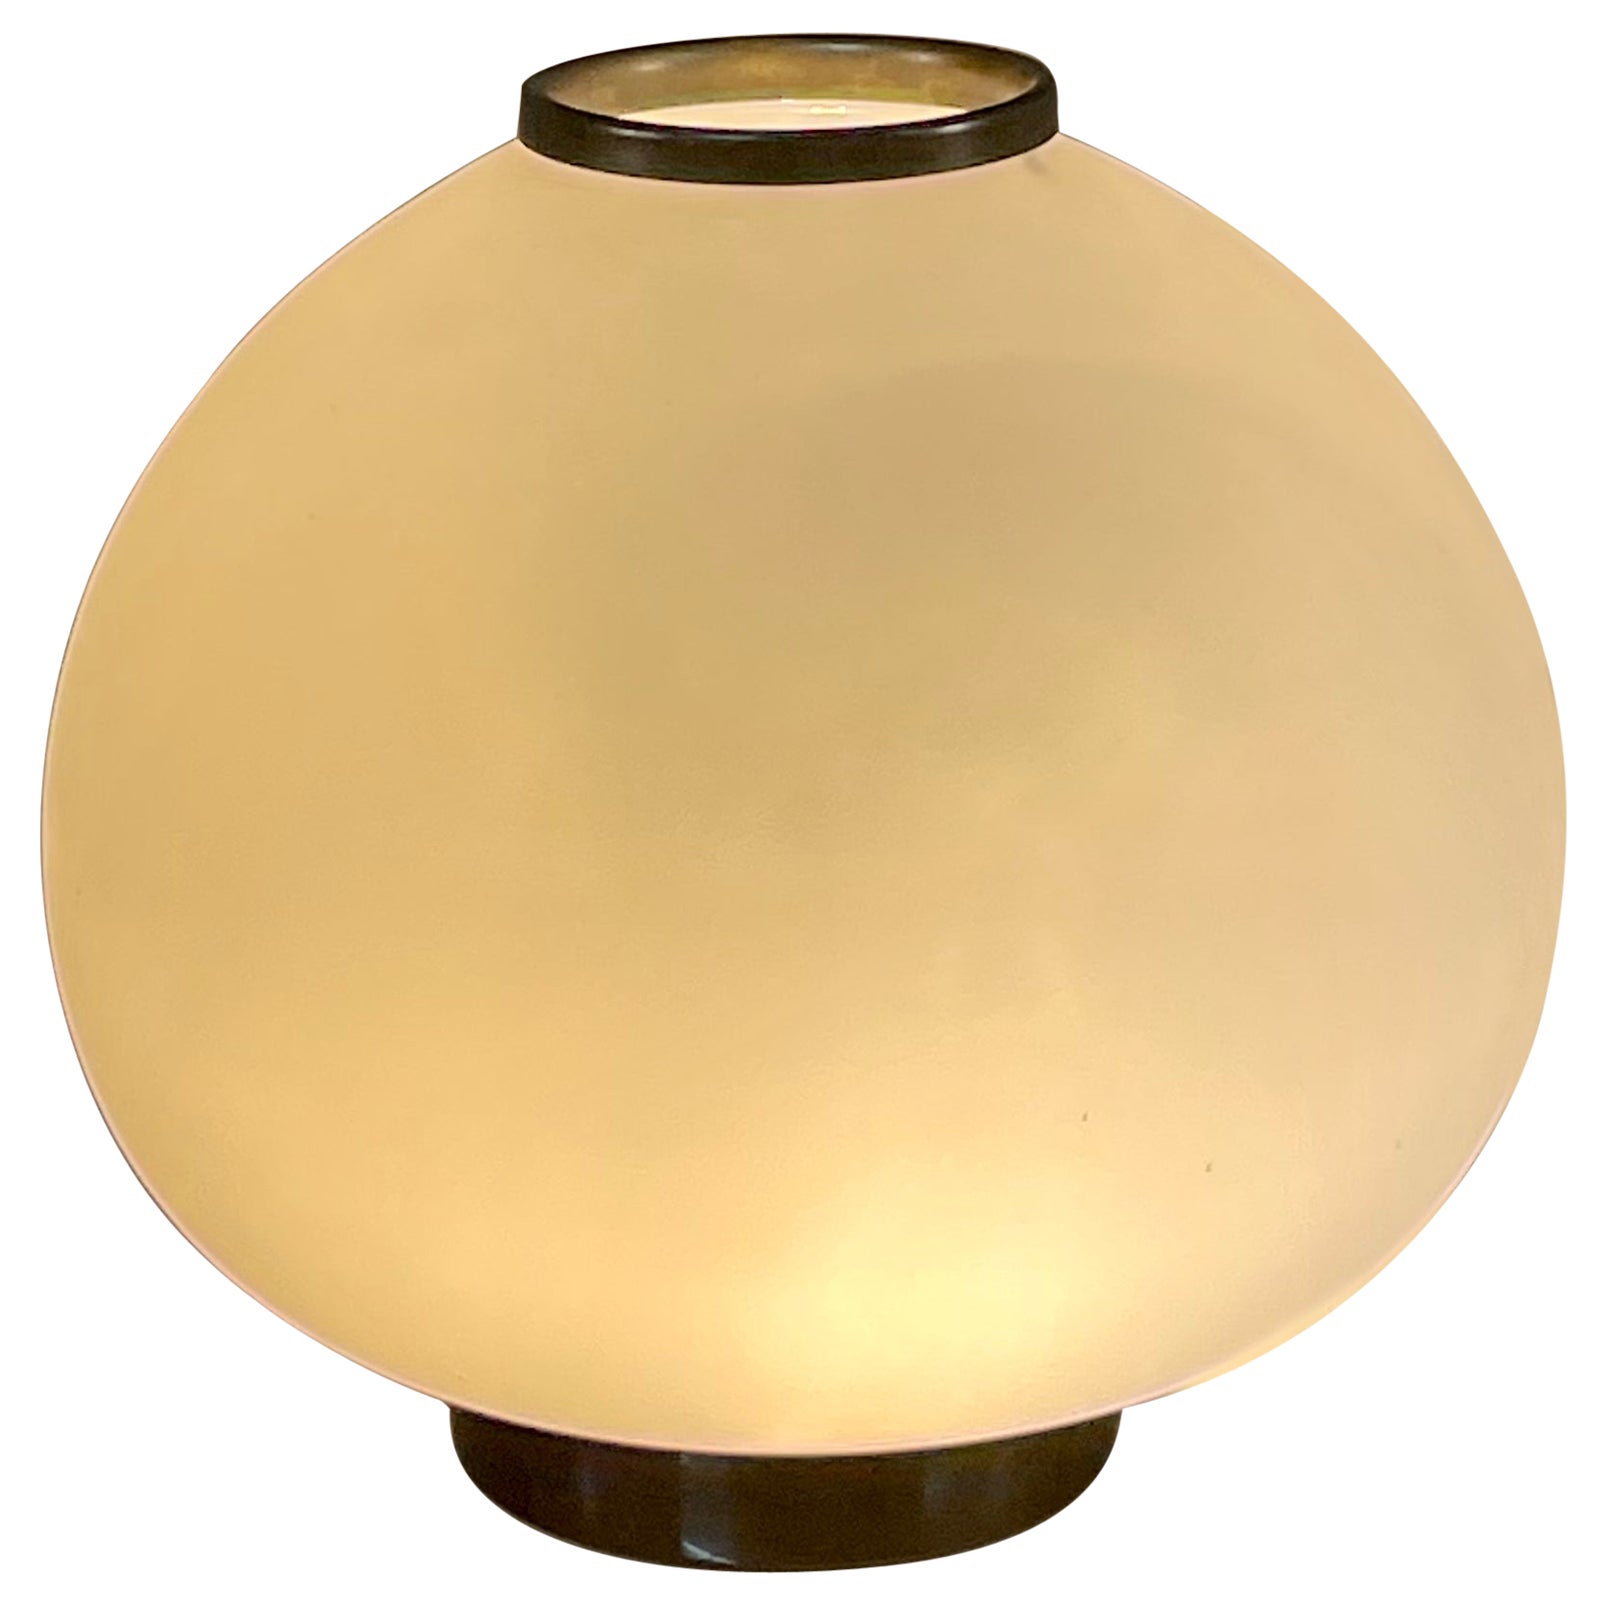 Stilnovo Original Signed 1960s Glass Table Lamp